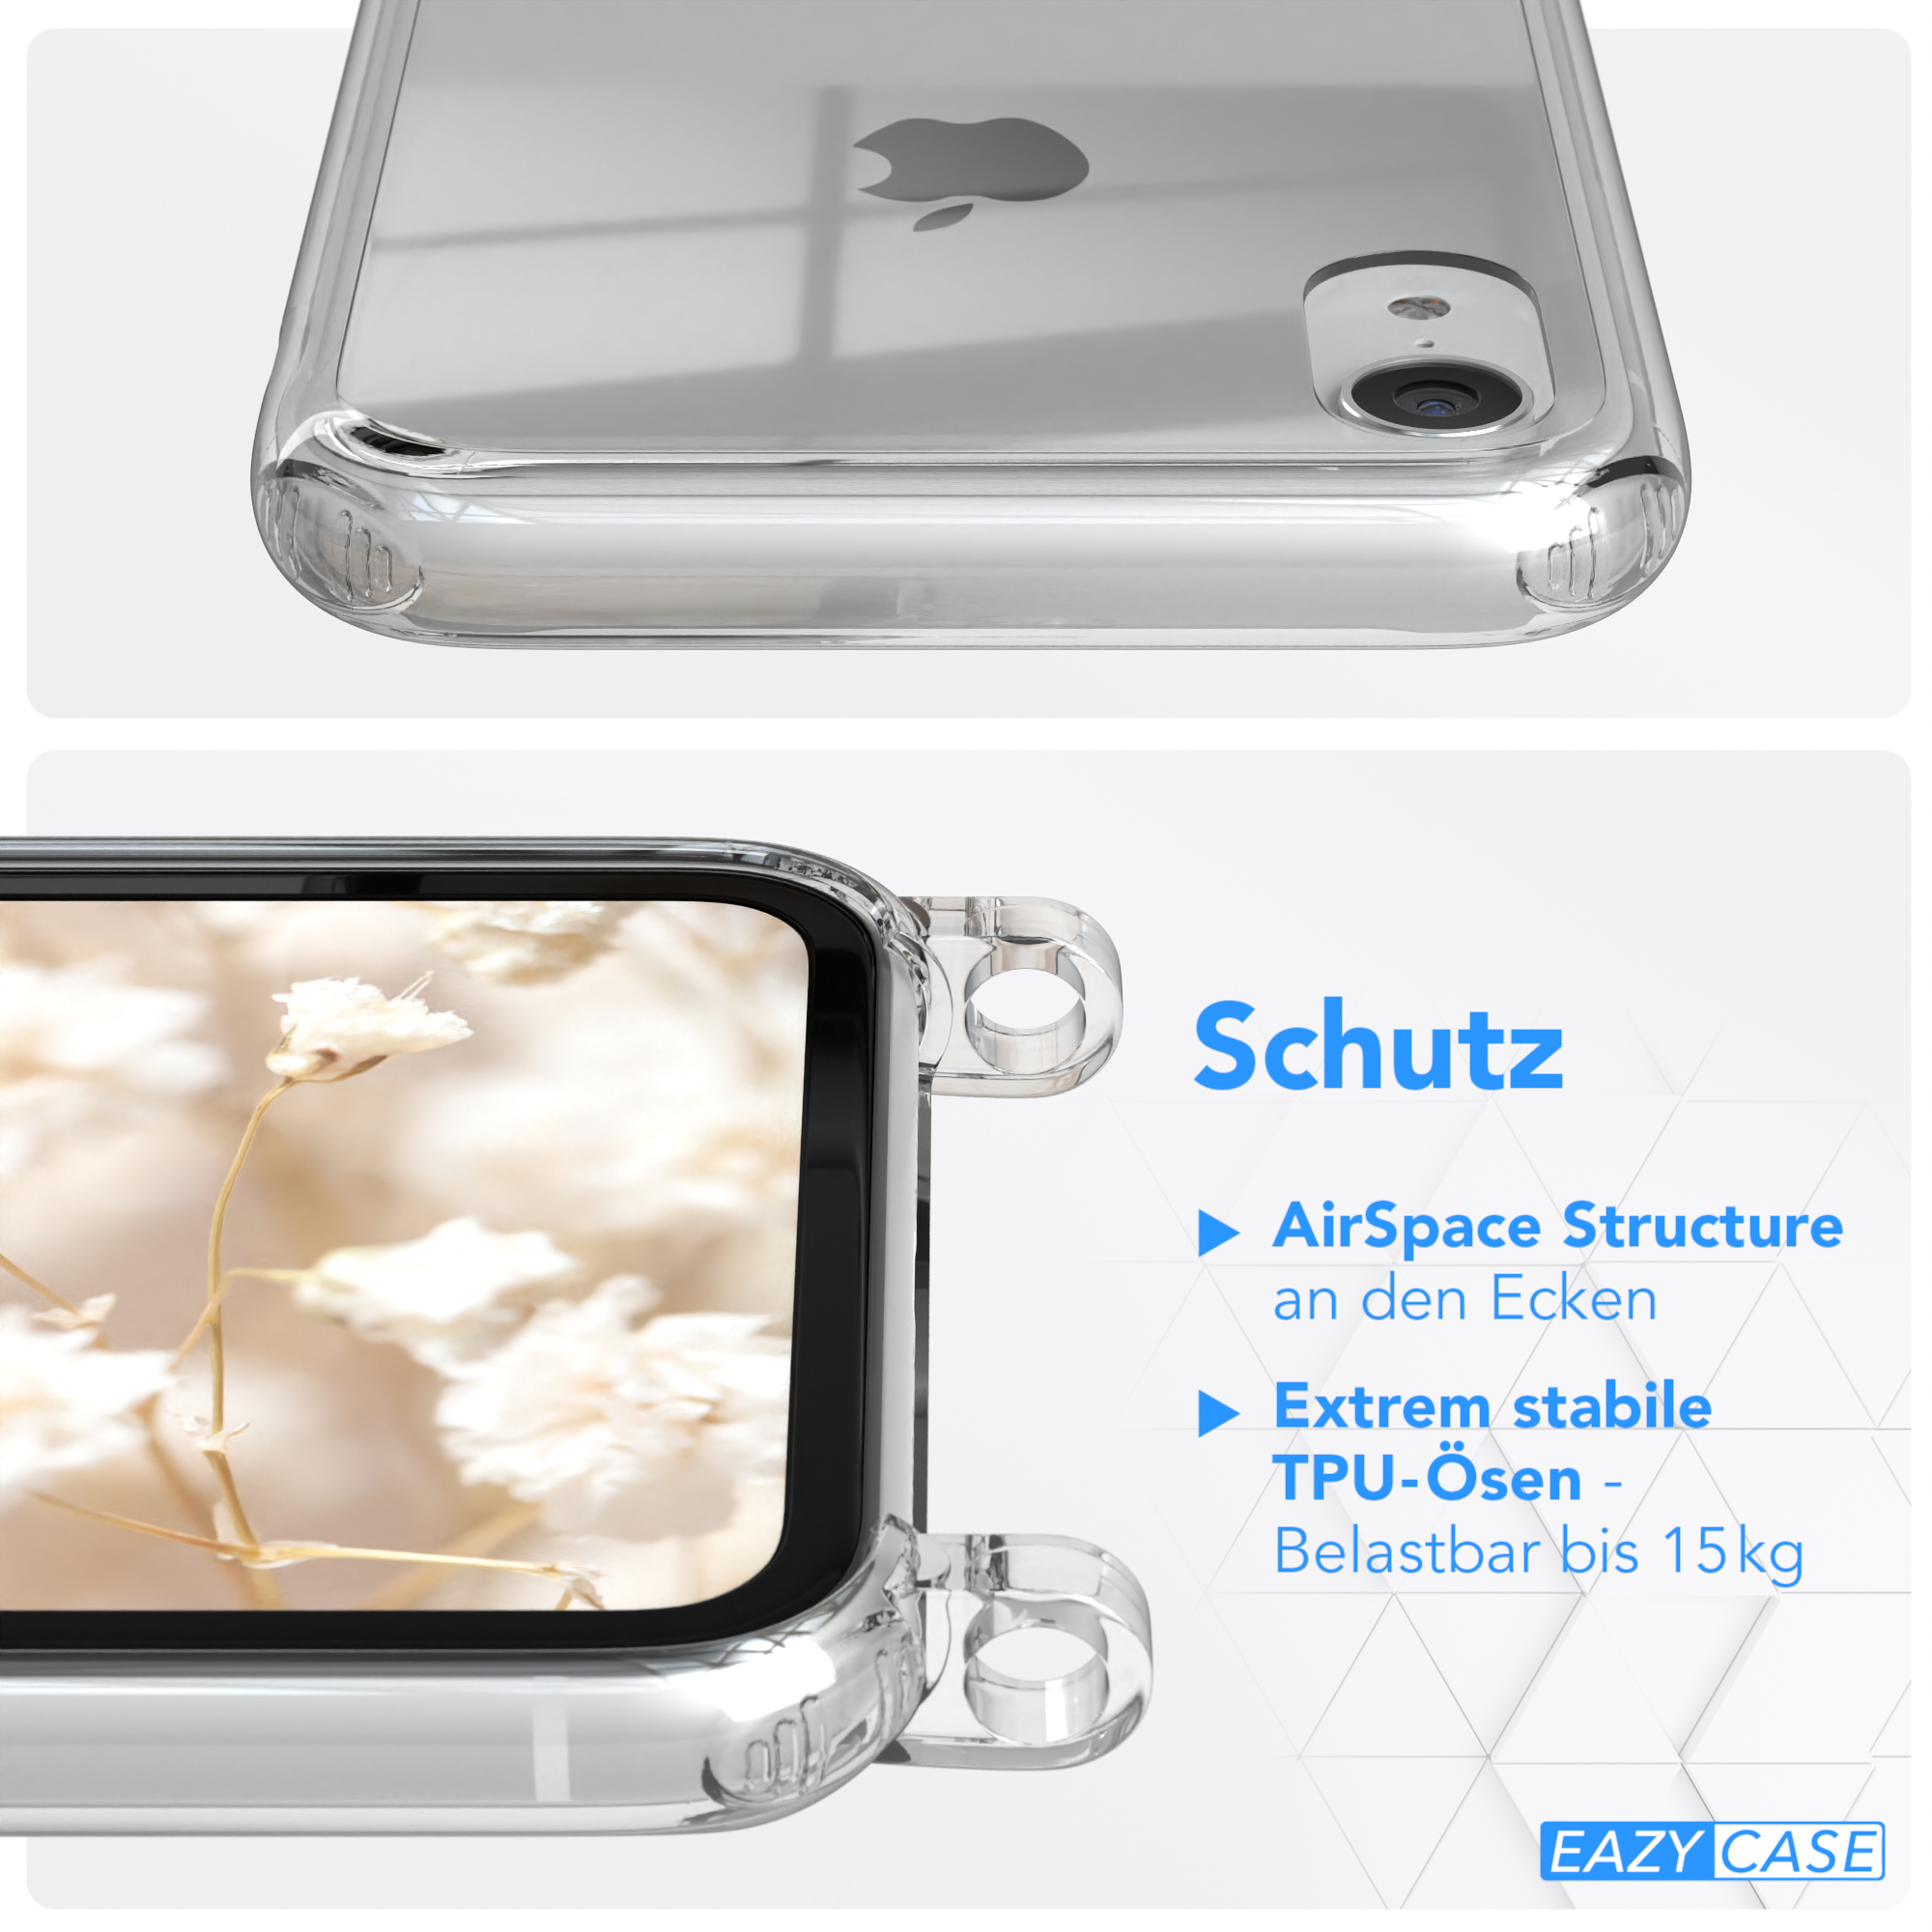 / Weiß Handyhülle iPhone Kordel Blau Transparente Boho Apple, Style, CASE mit XR, EAZY Umhängetasche,